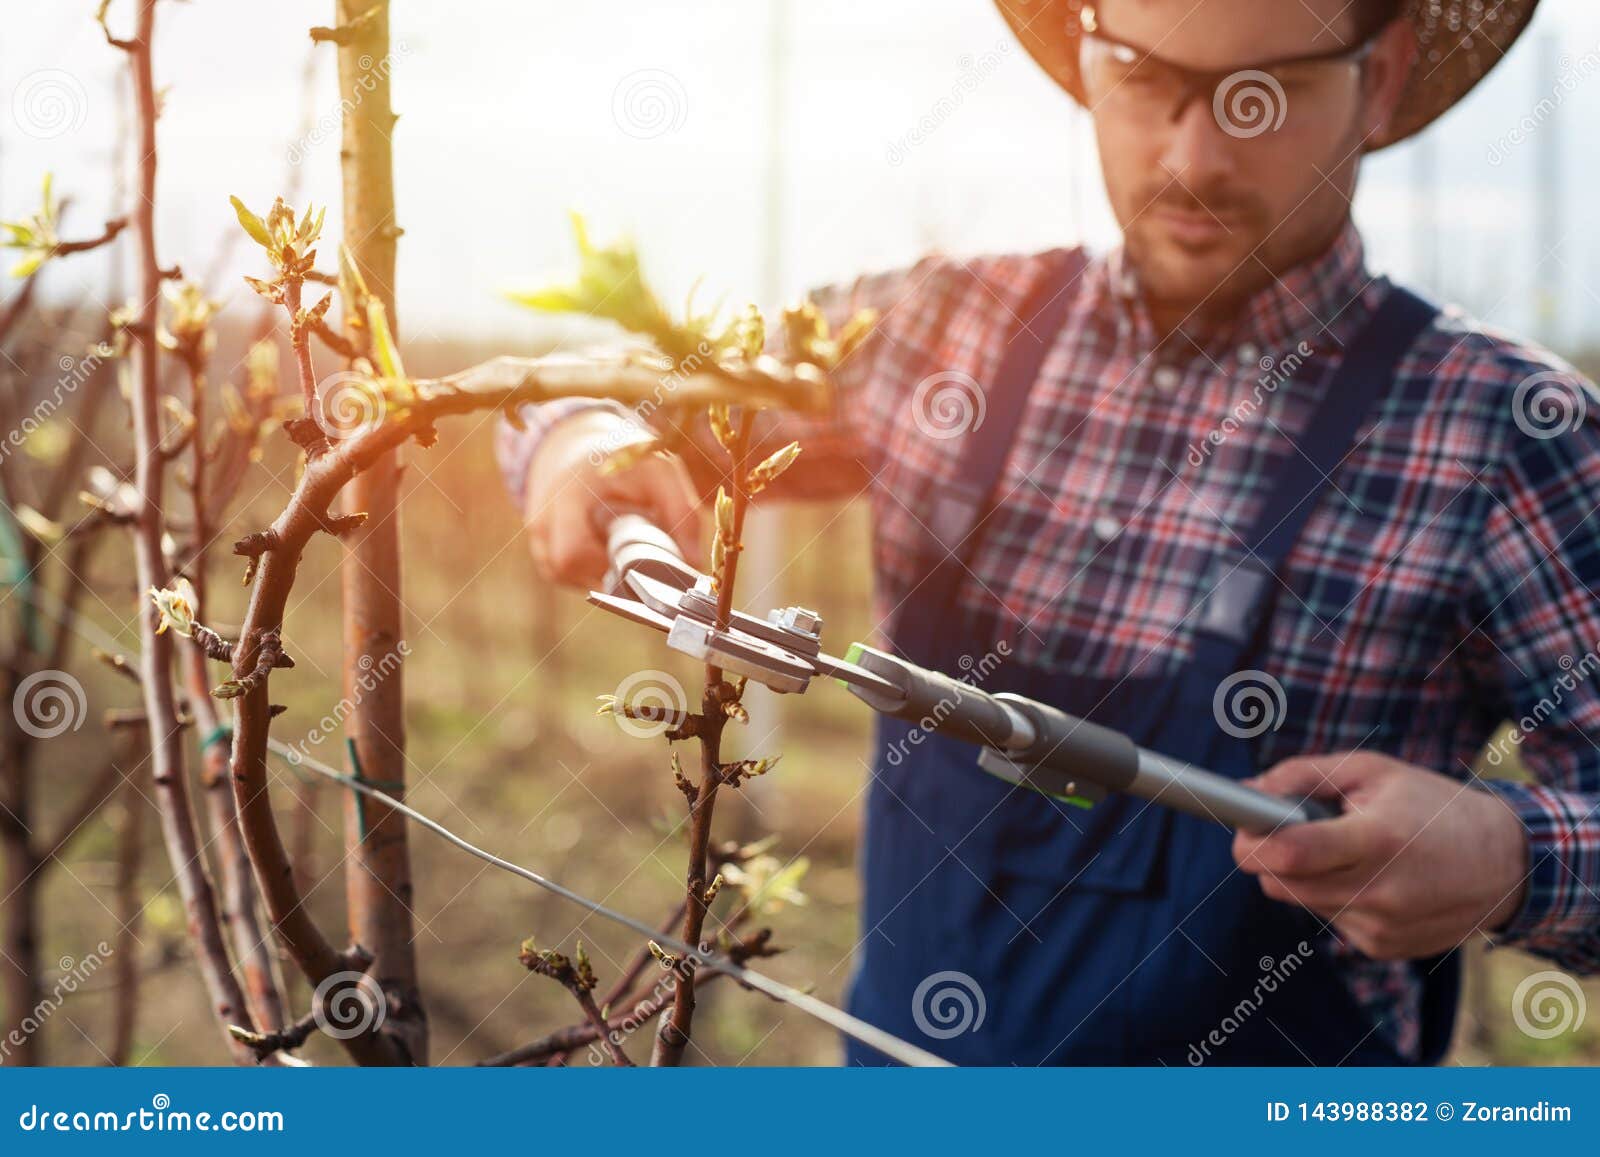 pruning fruit trees download